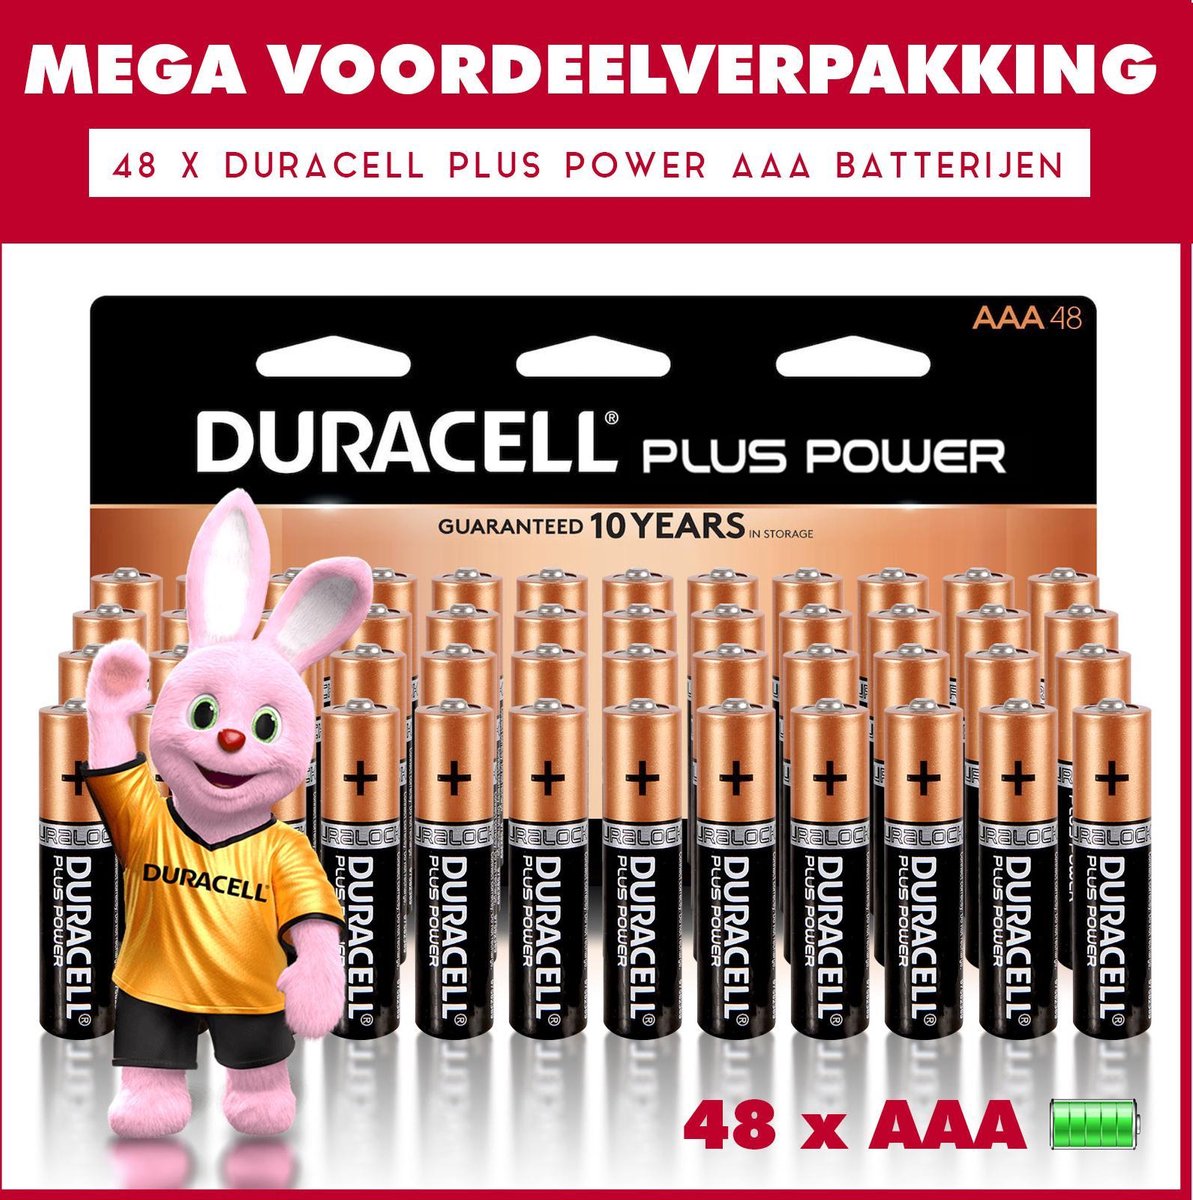 48 x Duracell AAA Plus Power - Voordeelverpakking - 48 x AAA batterijen